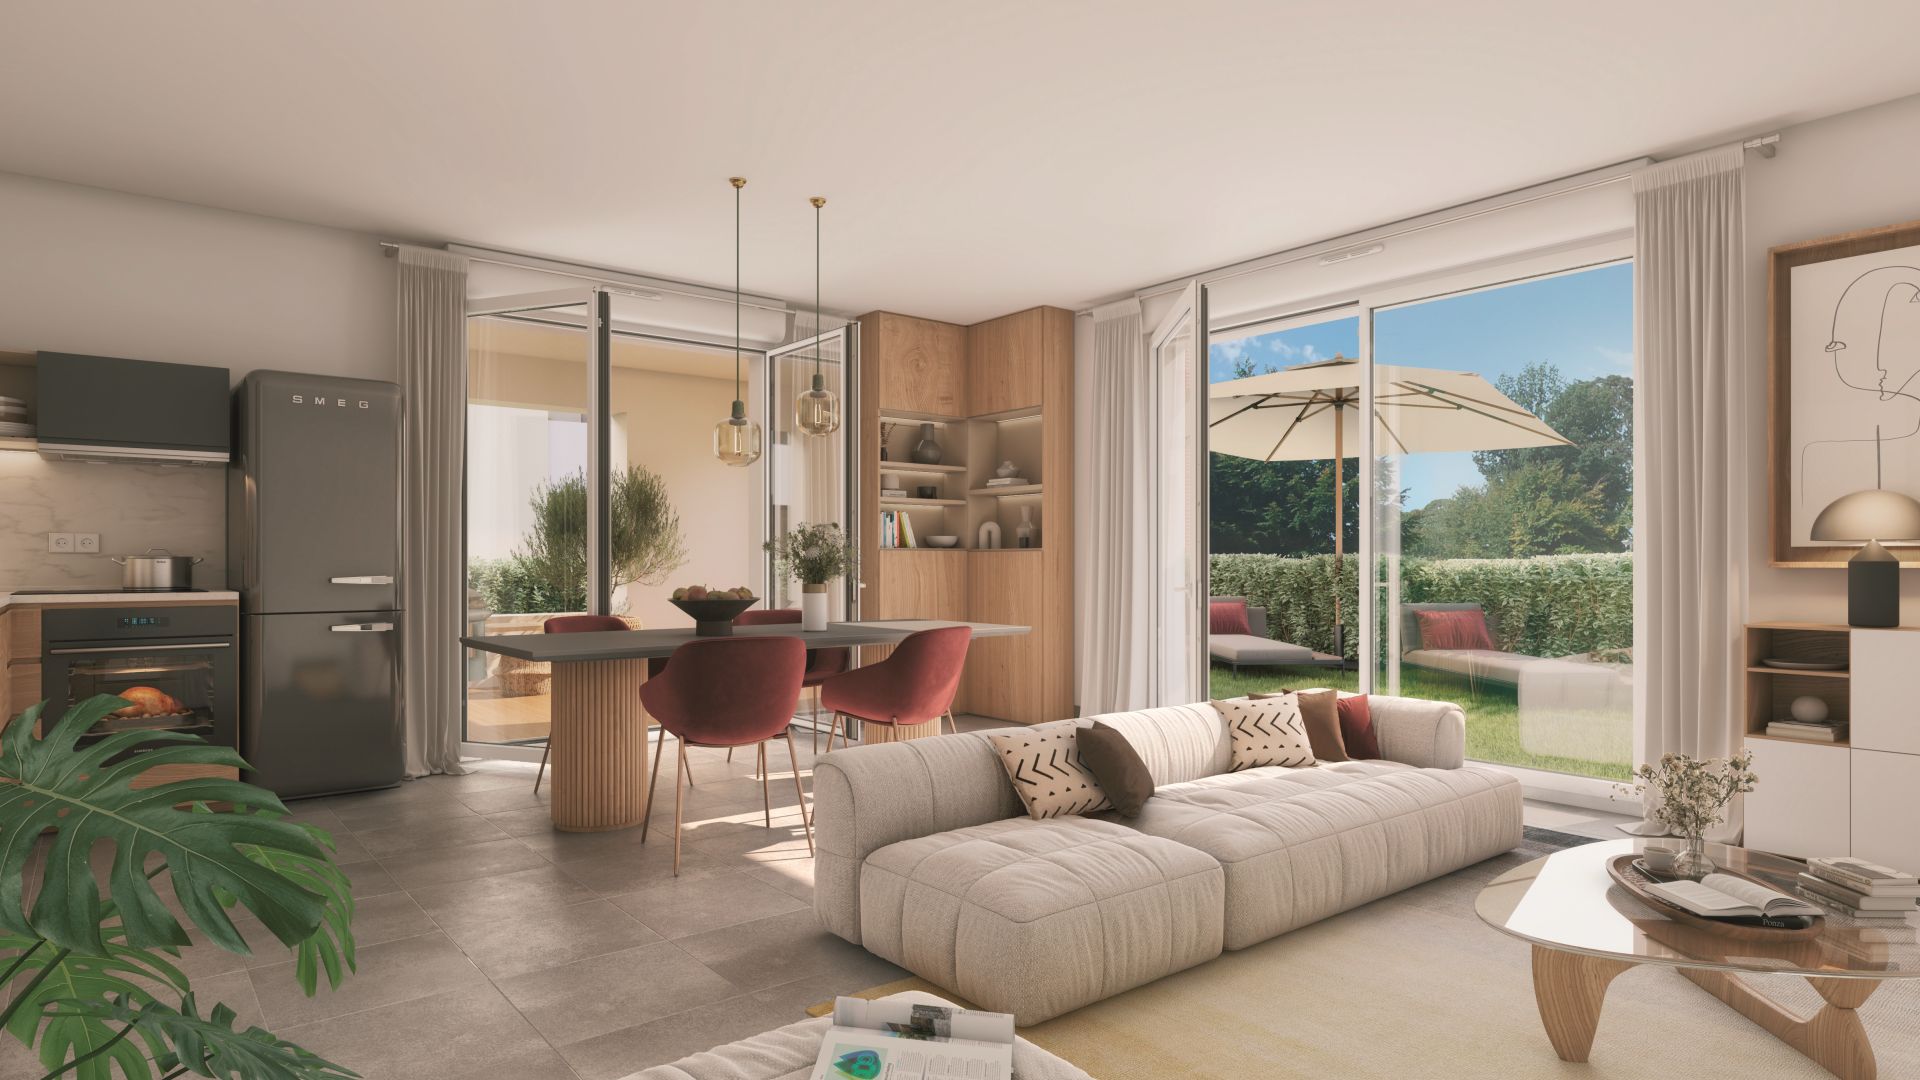 Greencity immobilier - achat appartements neufs T2 - Résidence Le Virebent - 31140 Launaguet  